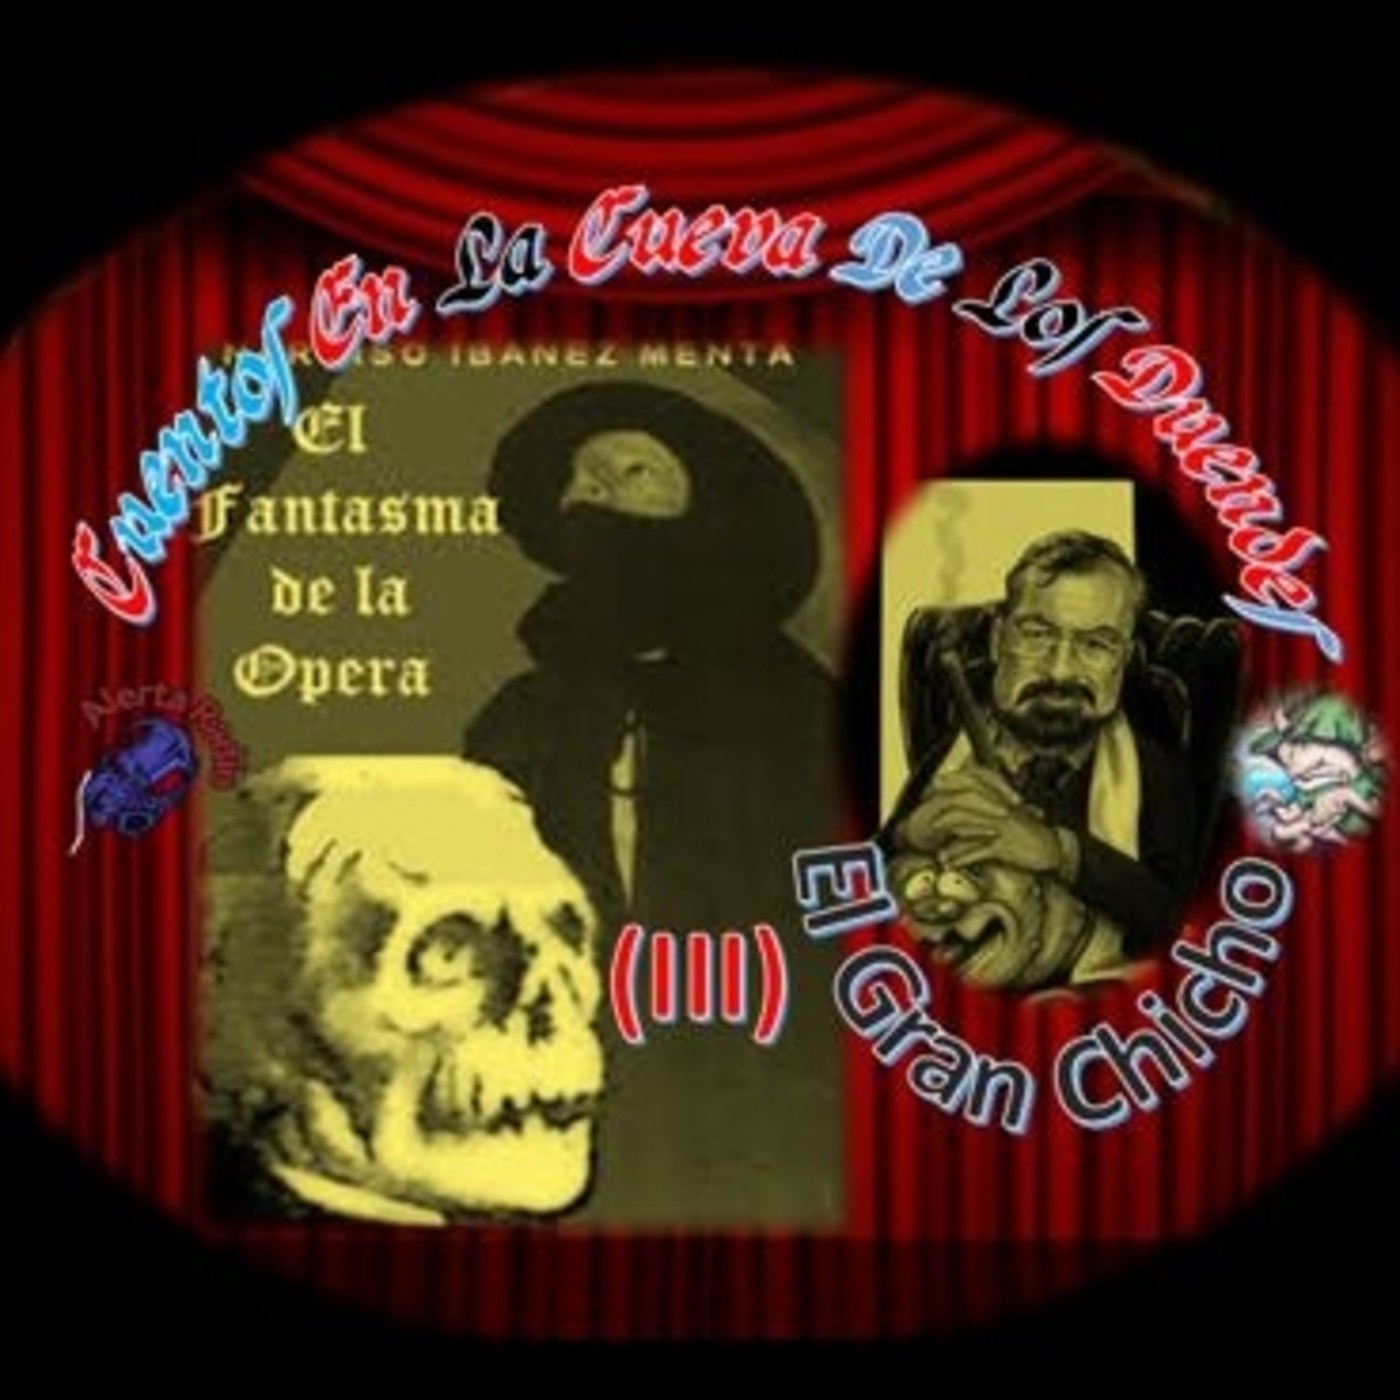 Cuentos en La Cueva 22 -T2 E14 El Gran Chicho #6 El Fantasma de la Ópera (3ª parte)